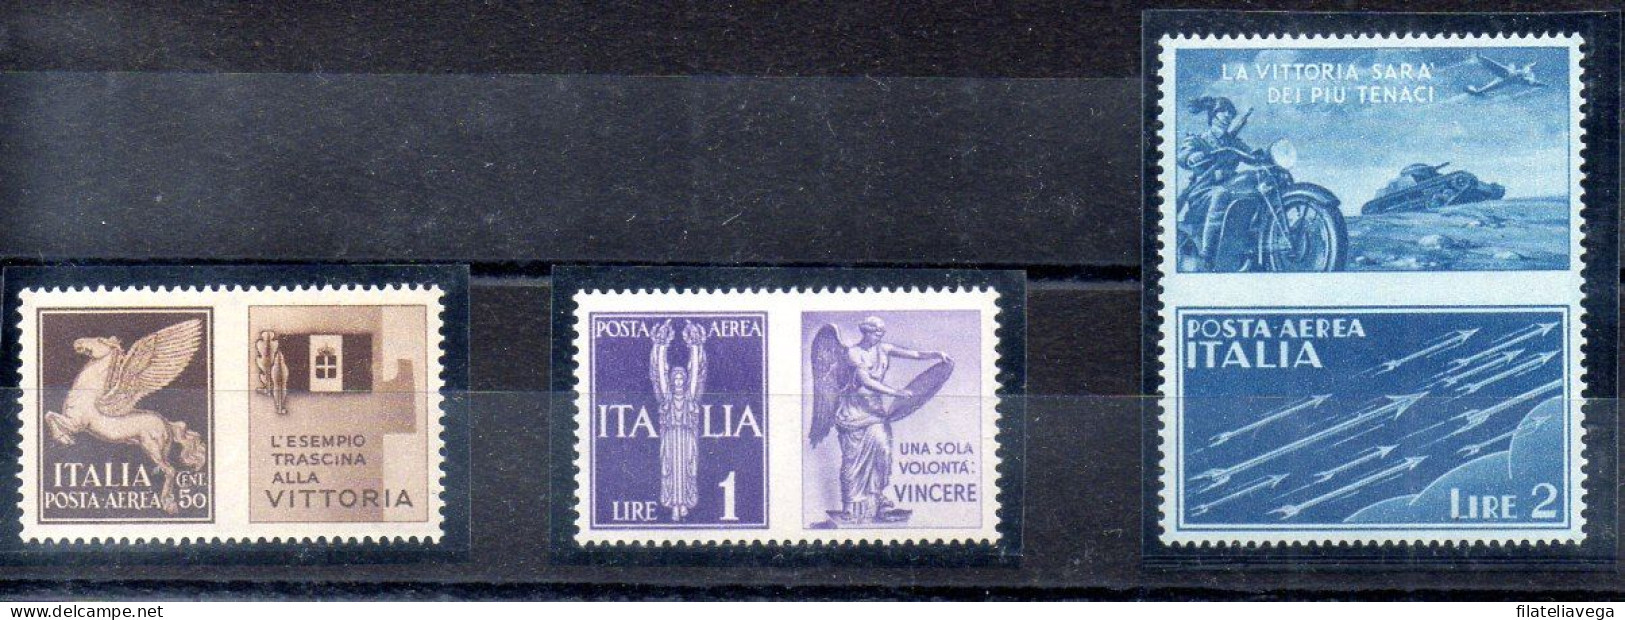 Italia 3 Series "PROPAGANDA DE GUERRA" Año 1942 -NO EMITIDOS- Nº Michel 328P5 + 330P6 + 331P7 * - Oorlogspropaganda